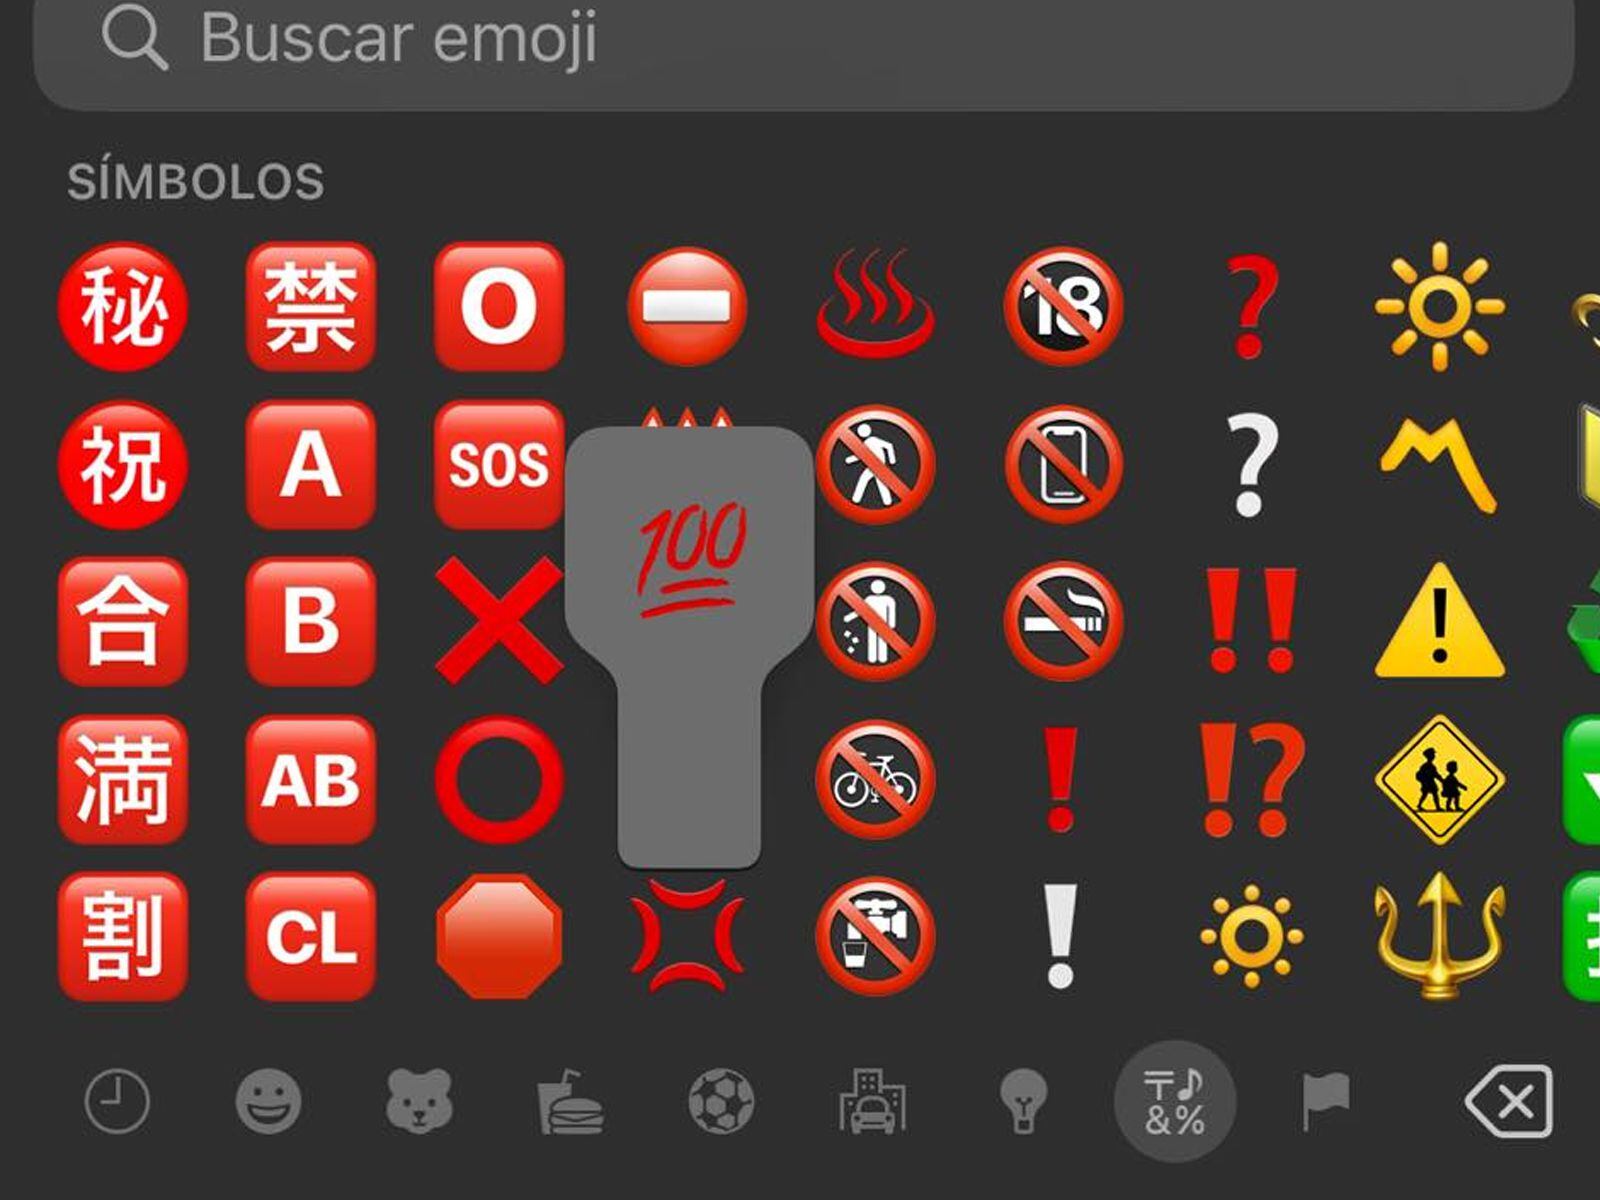 El emoji del número 100 se encuentra en la sección símbolos de WhatsApp. (Foto: MAG - Rommel Yupanqui)